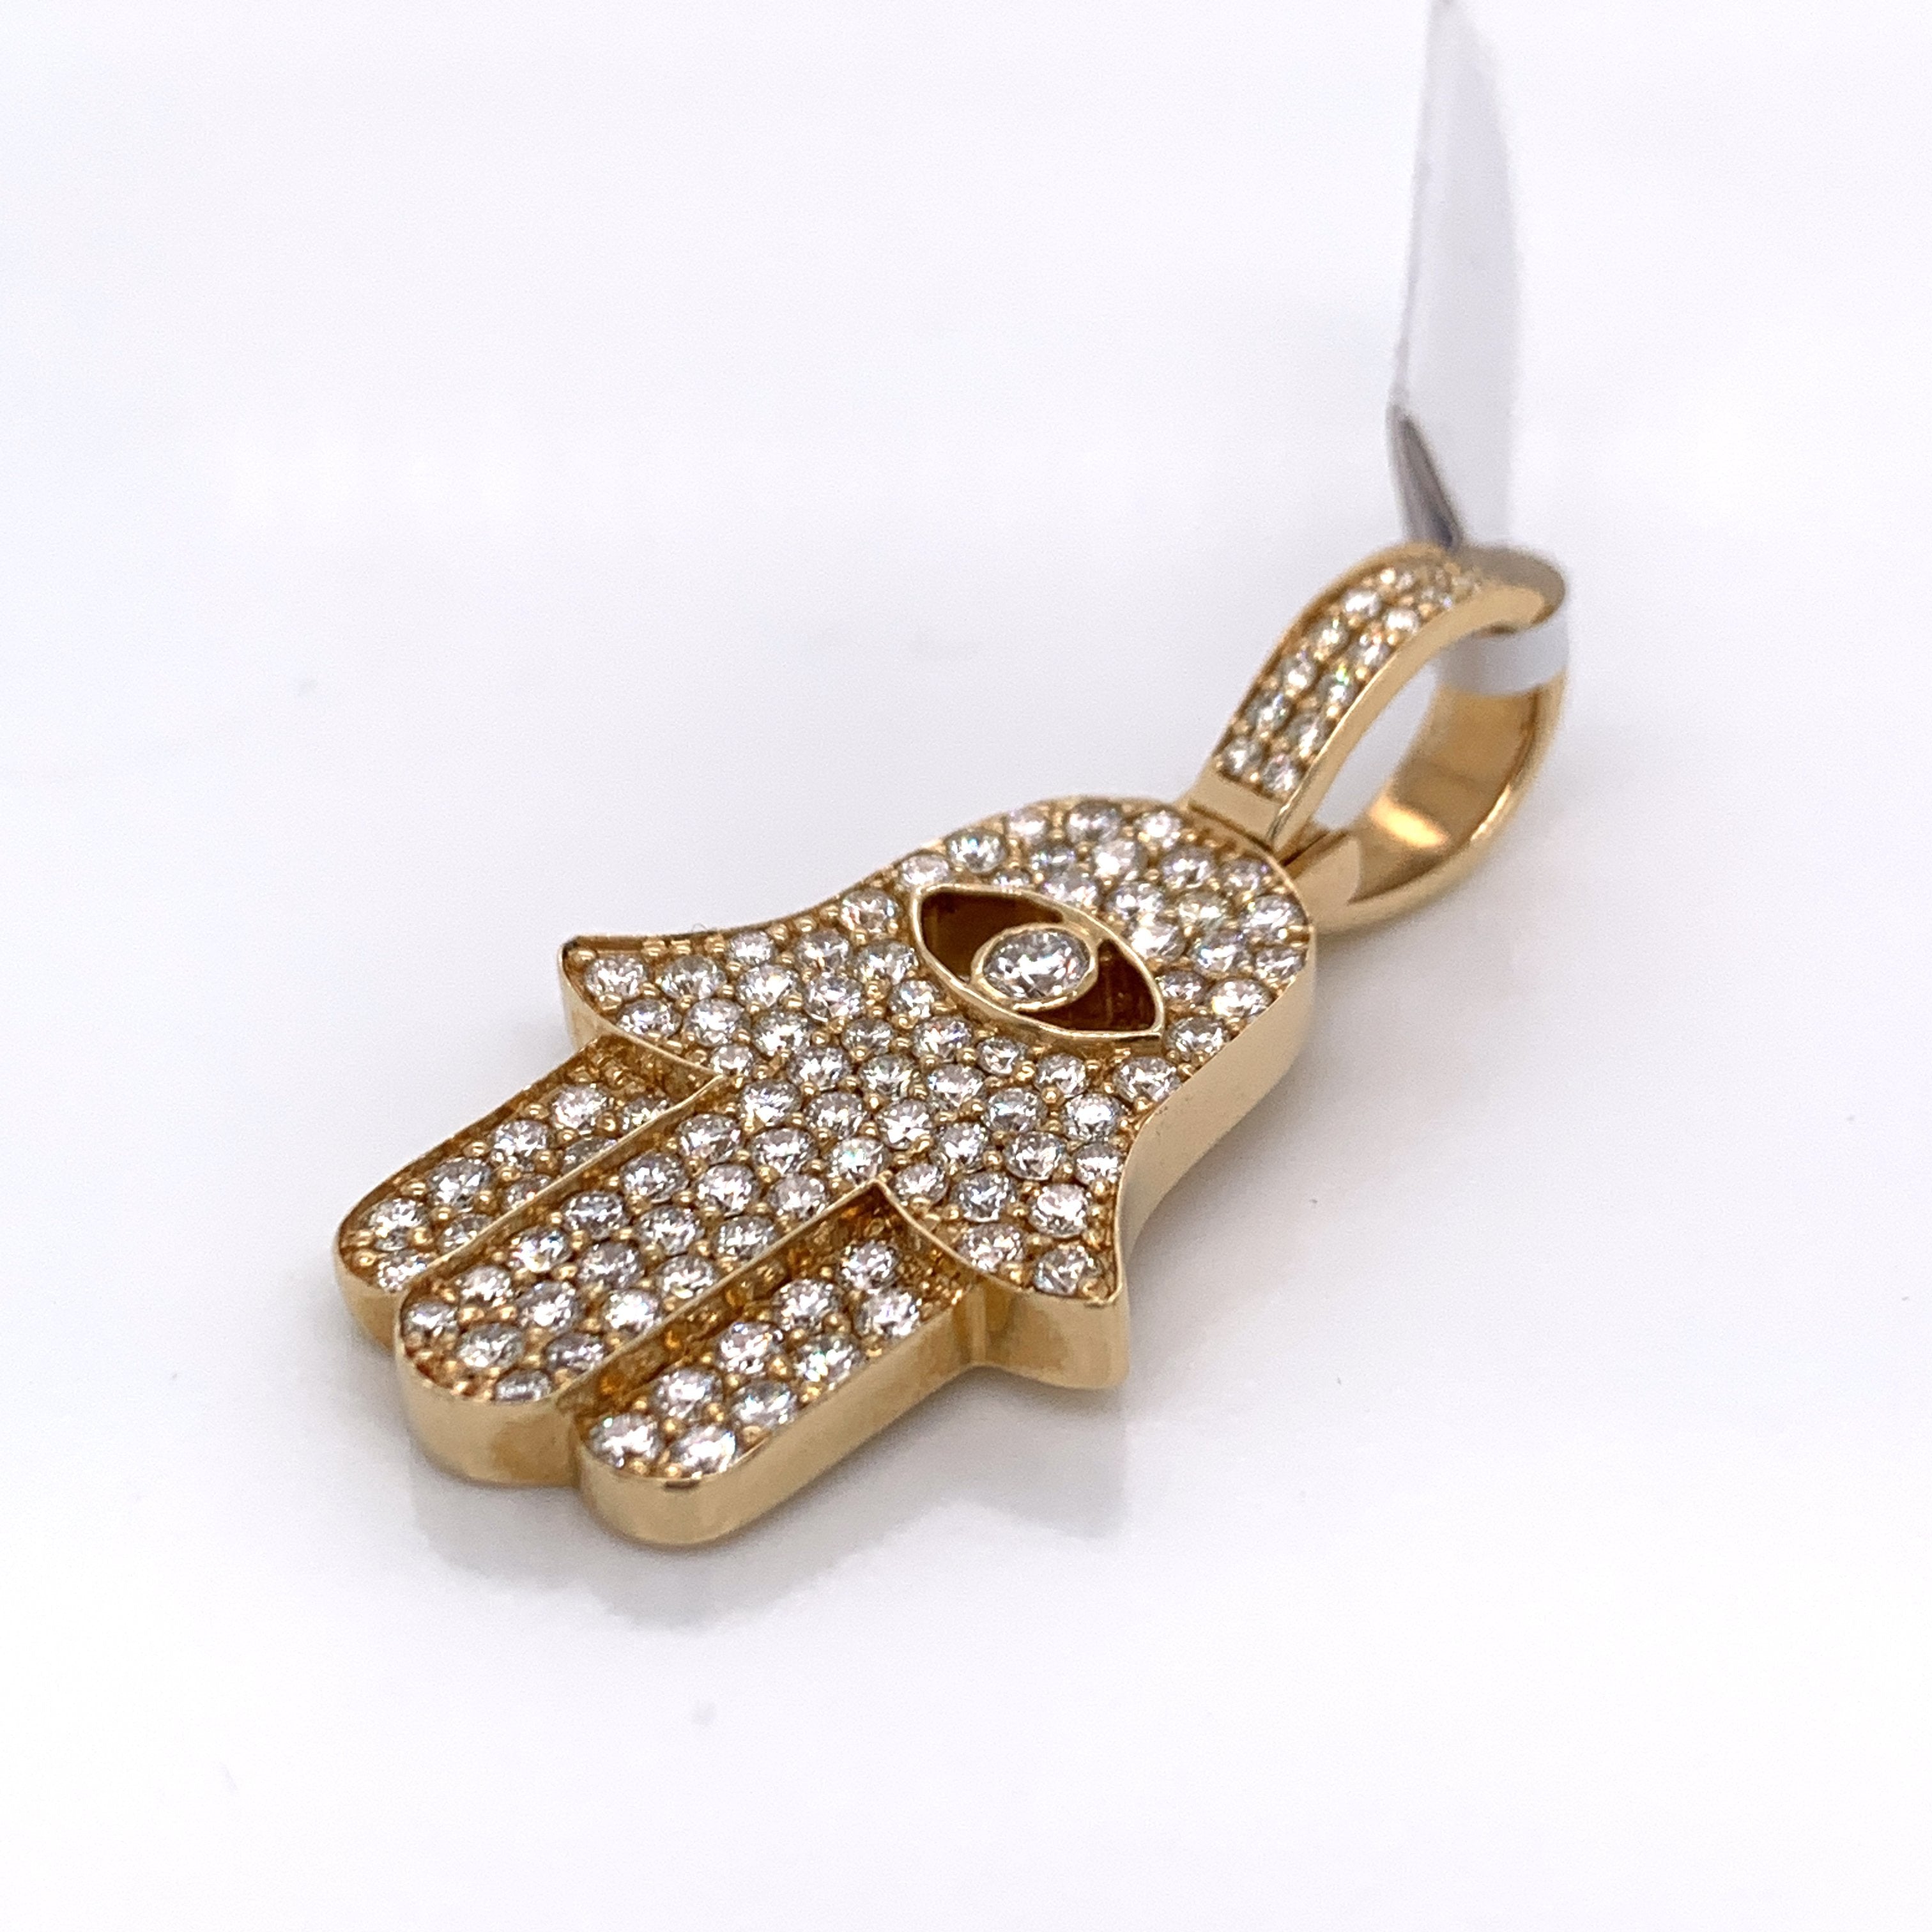 2.50 CT. Diamond Hamsa Solitaire Pendant in 14K Gold - White Carat Diamonds 